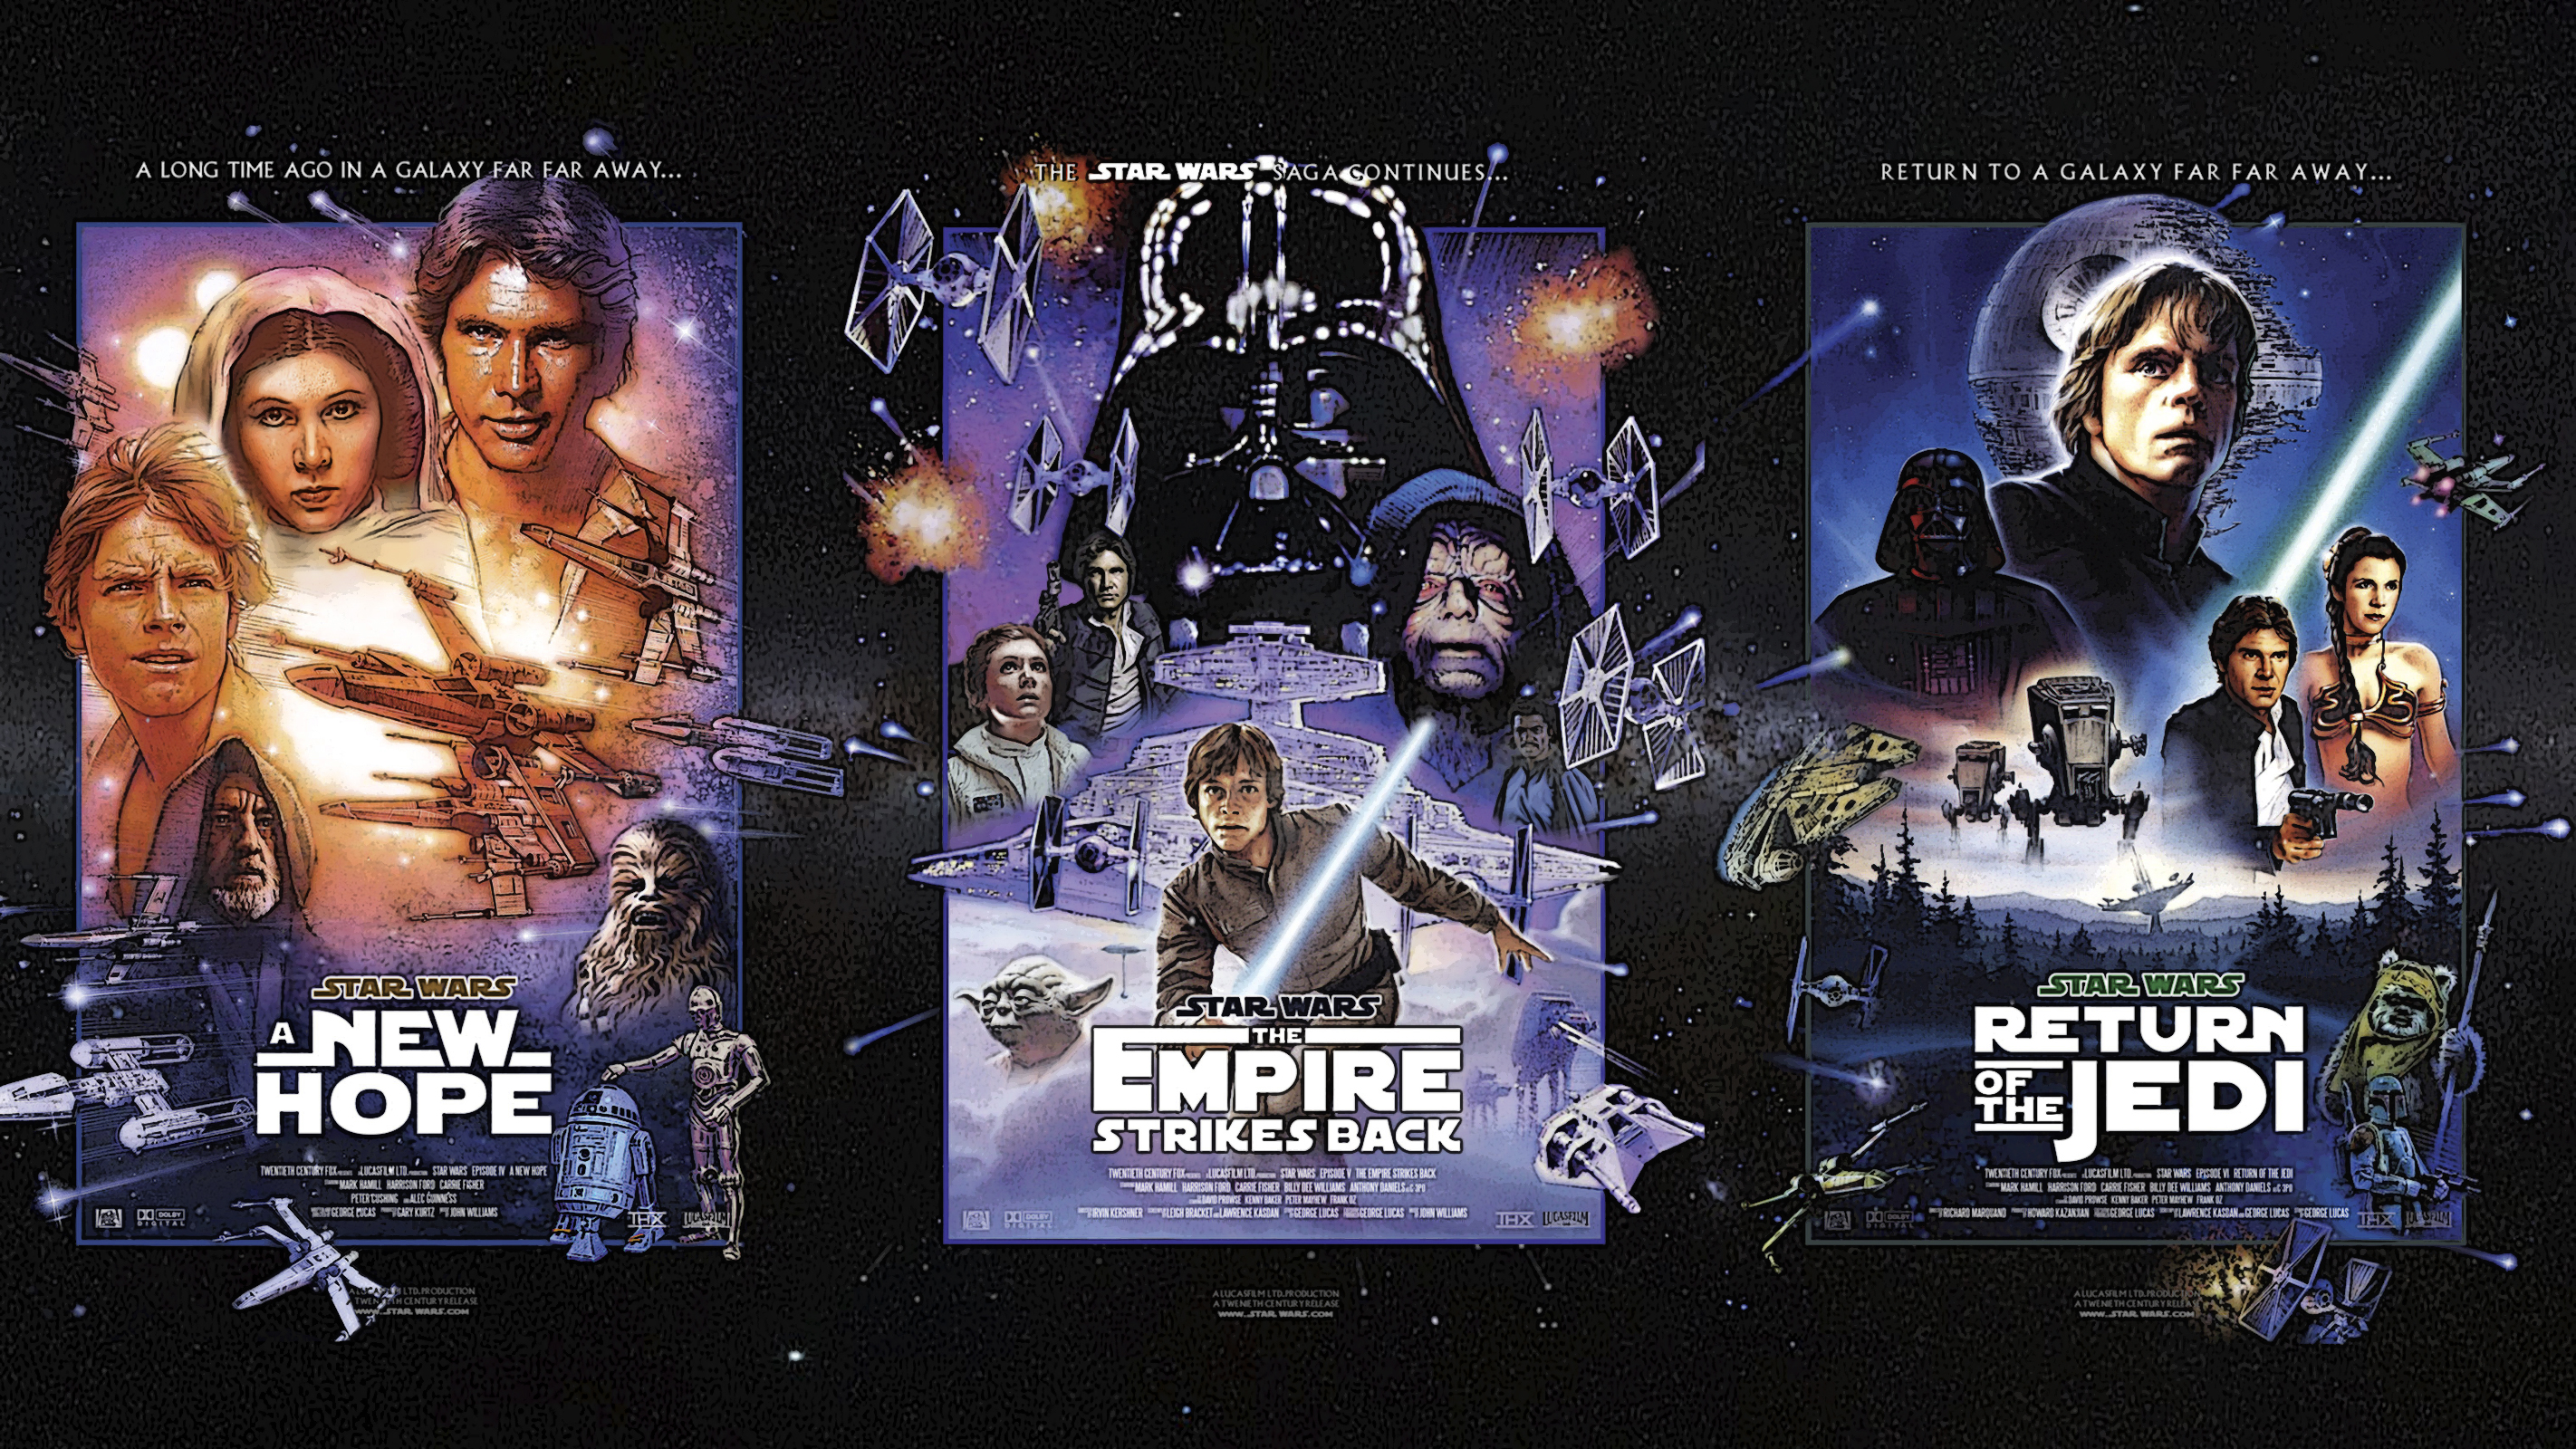 Stars returns. Звездные войны 1 трилогия. Трилогия приквел Звездные войны. Star Wars Original Trilogy.